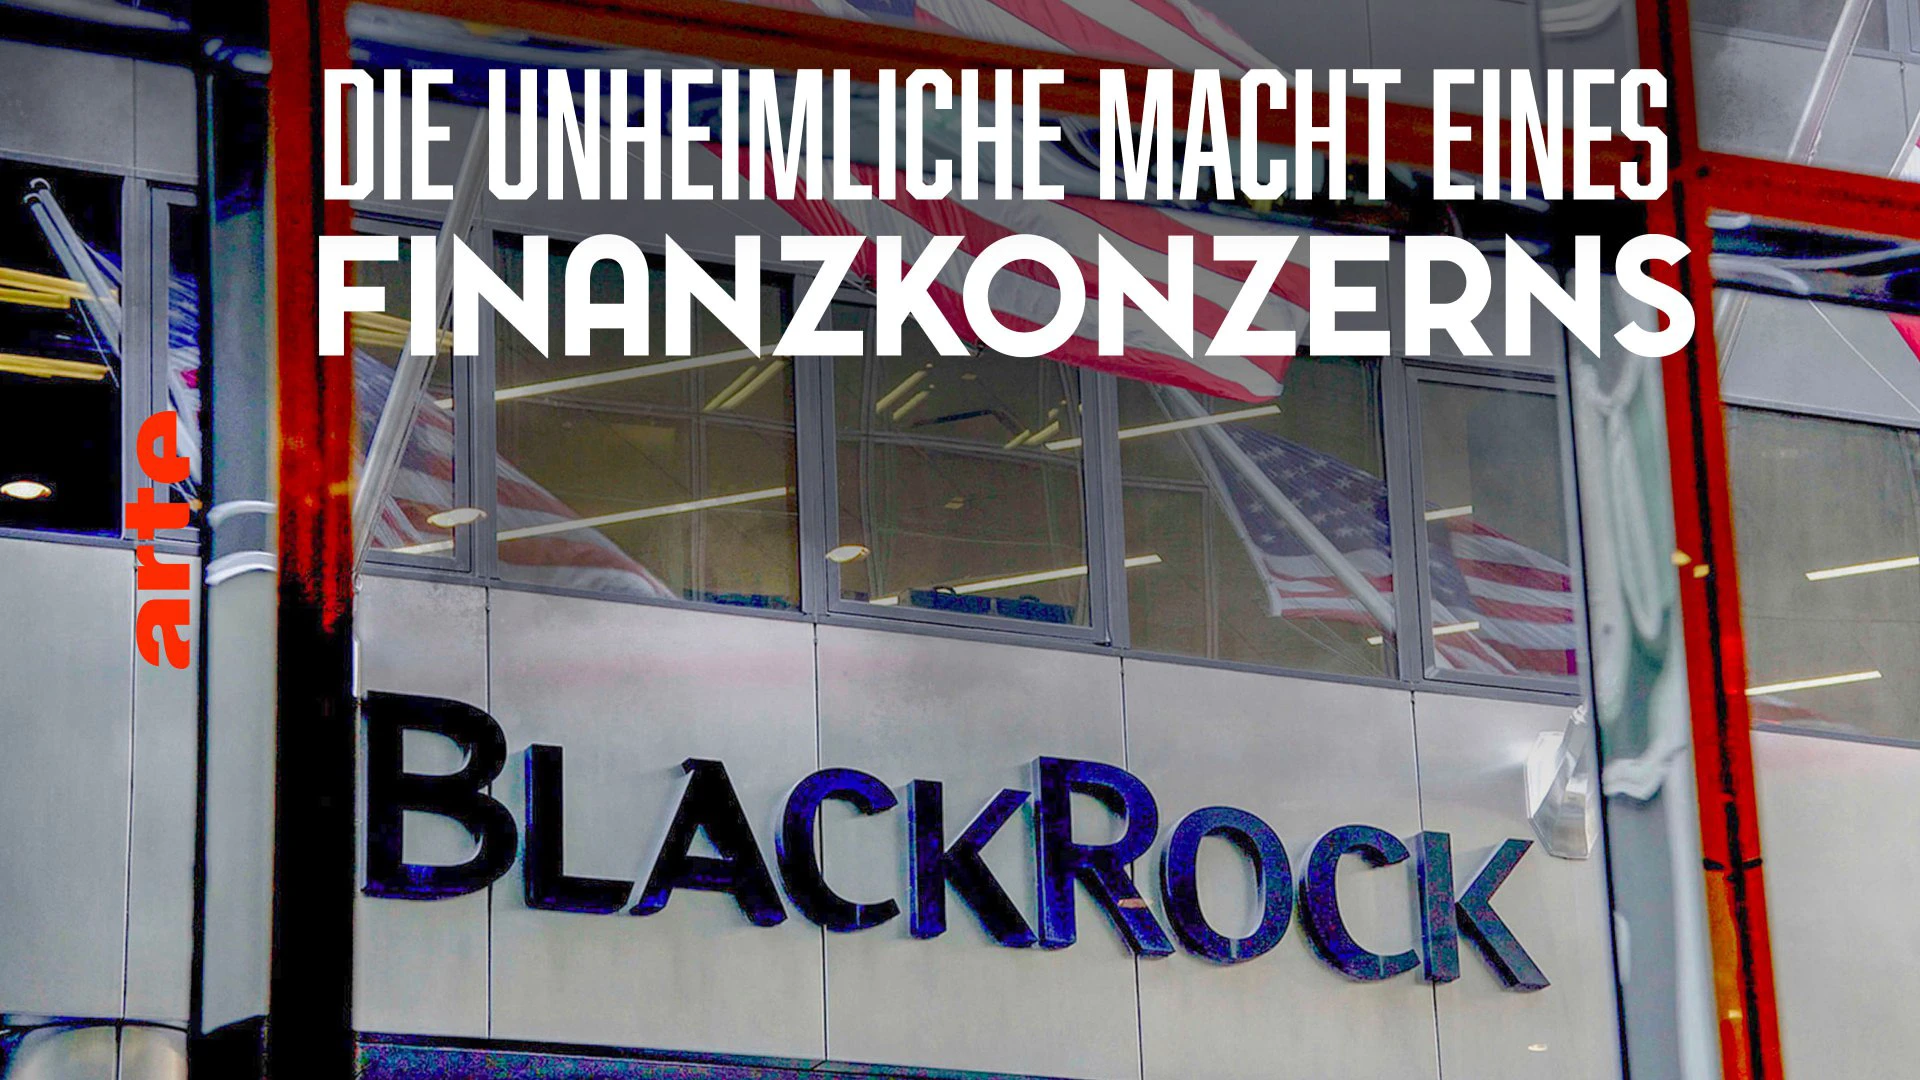 BlackRock - Die unheimliche Macht eines Finanzkonzerns (Arte 2019)